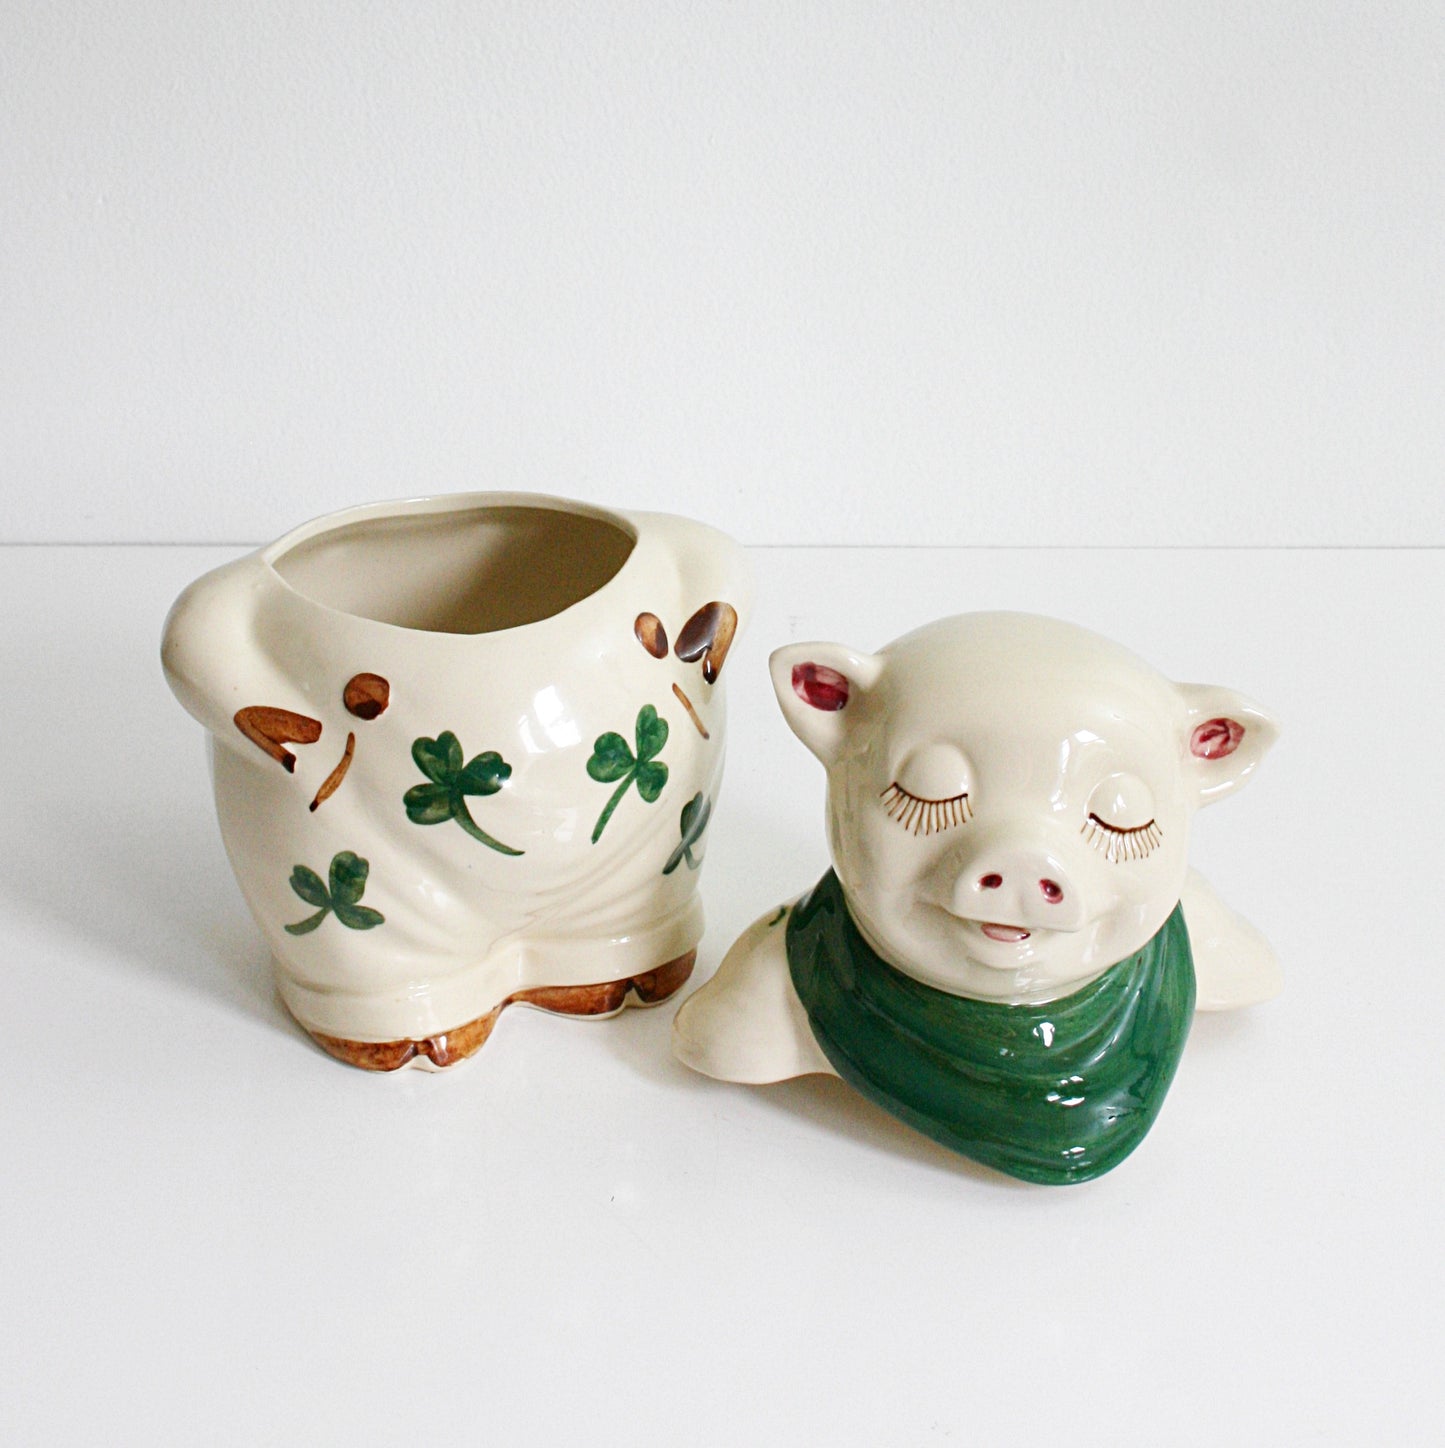 SOLD - Vintage Shawnee Shamrock Pig Cookie Jar / Antique 1940s Shawnee Smiley Pig Ceramic Canister